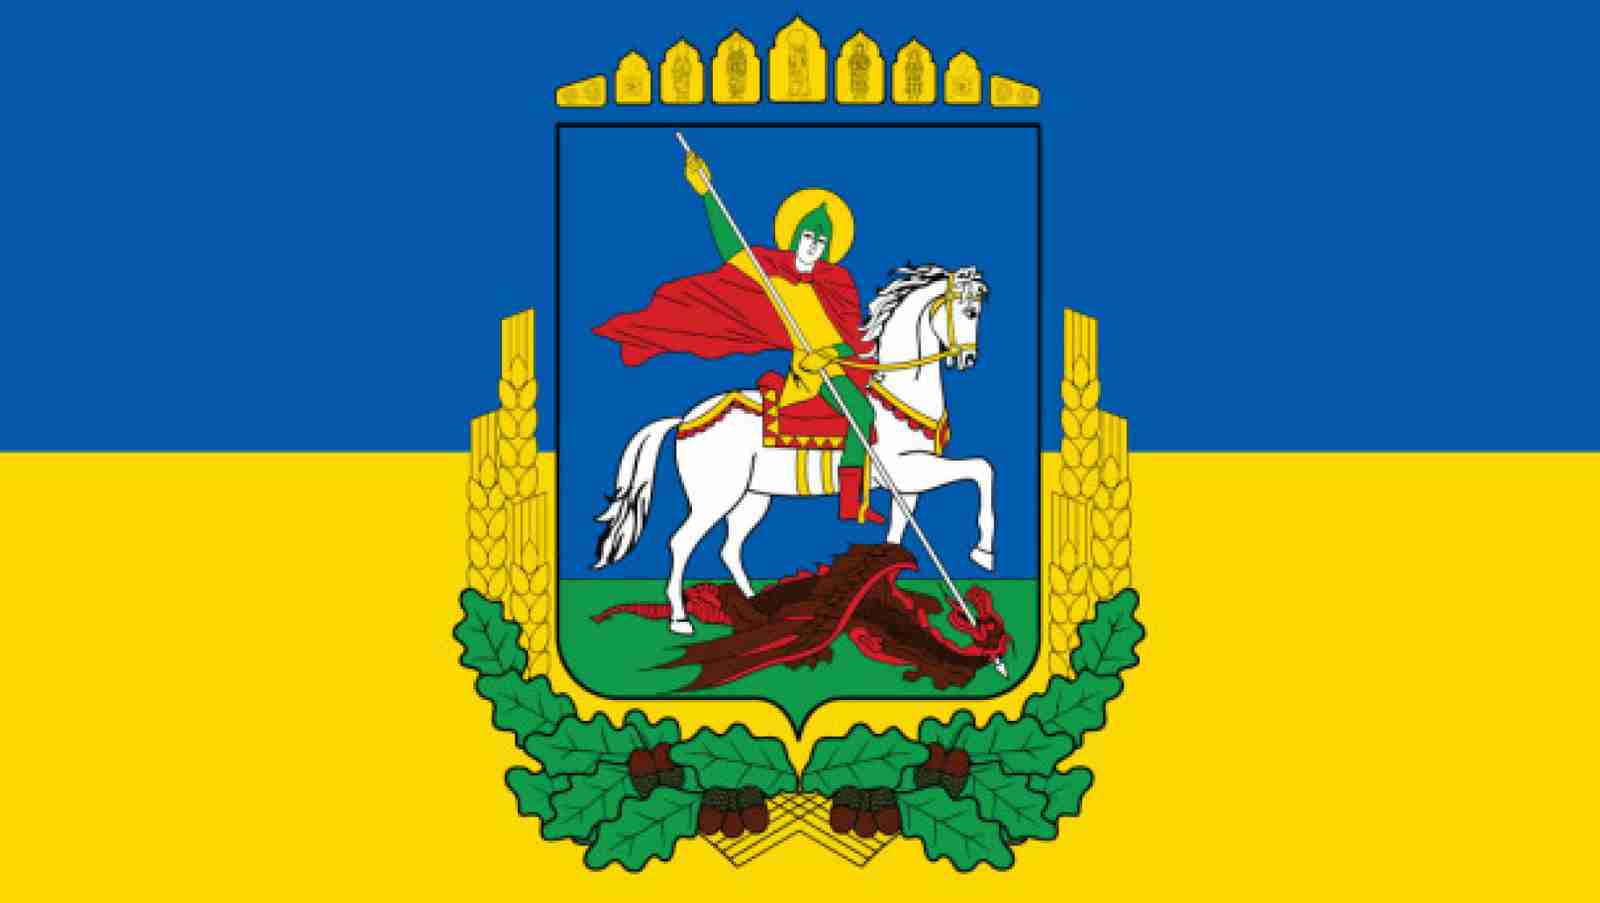 Київщина хоче змінити герб та прапор області: як вони виглядатимуть (ФОТО)